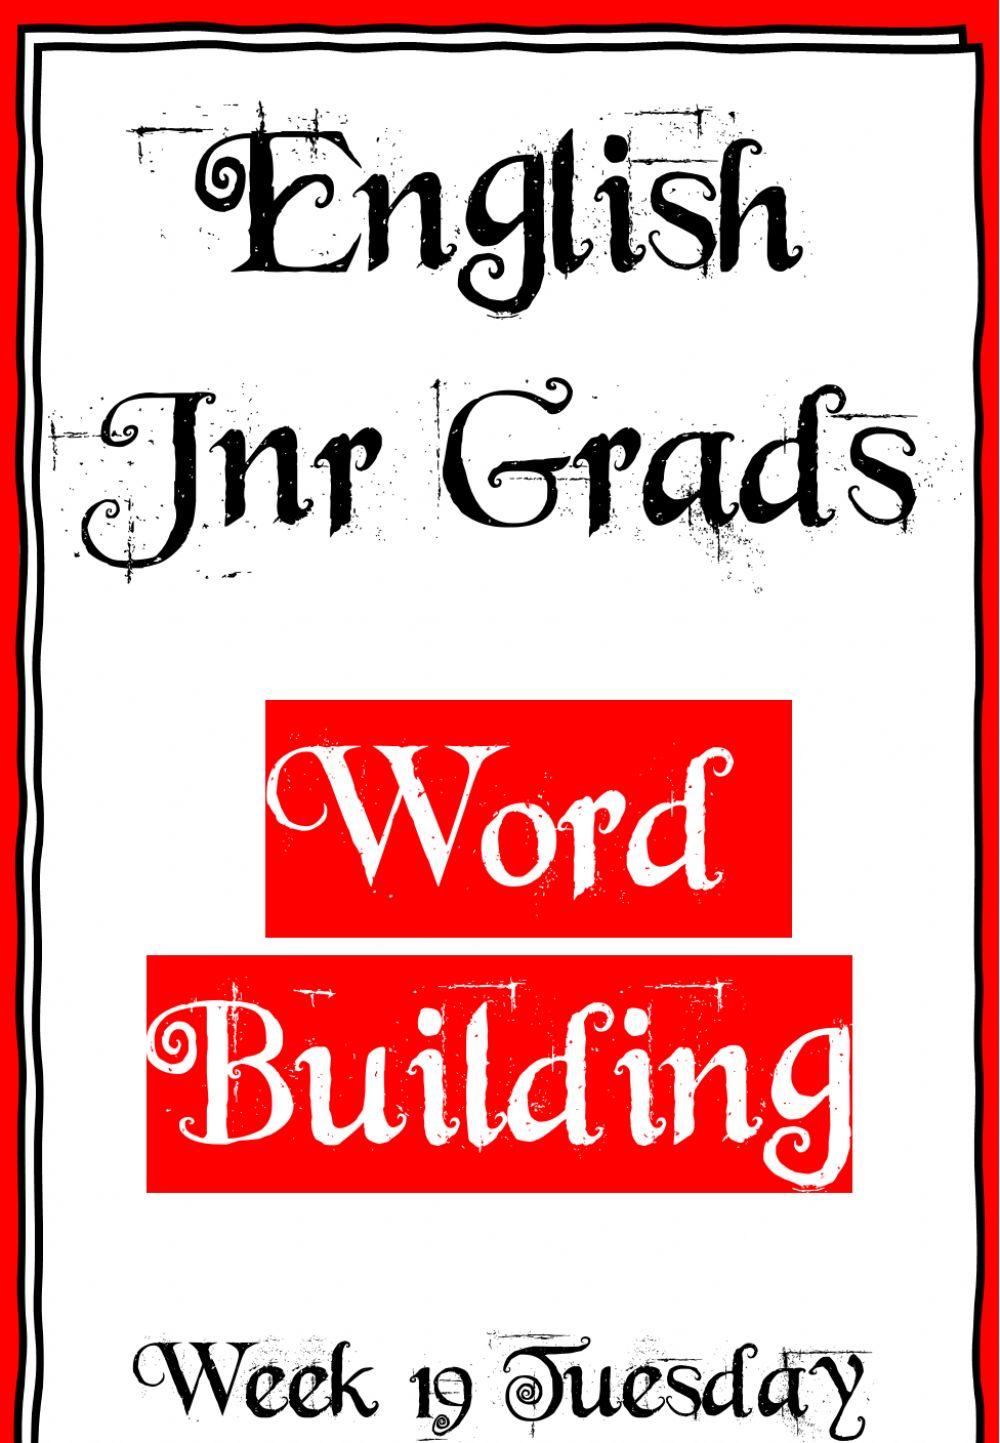 Week 19 - Word Building